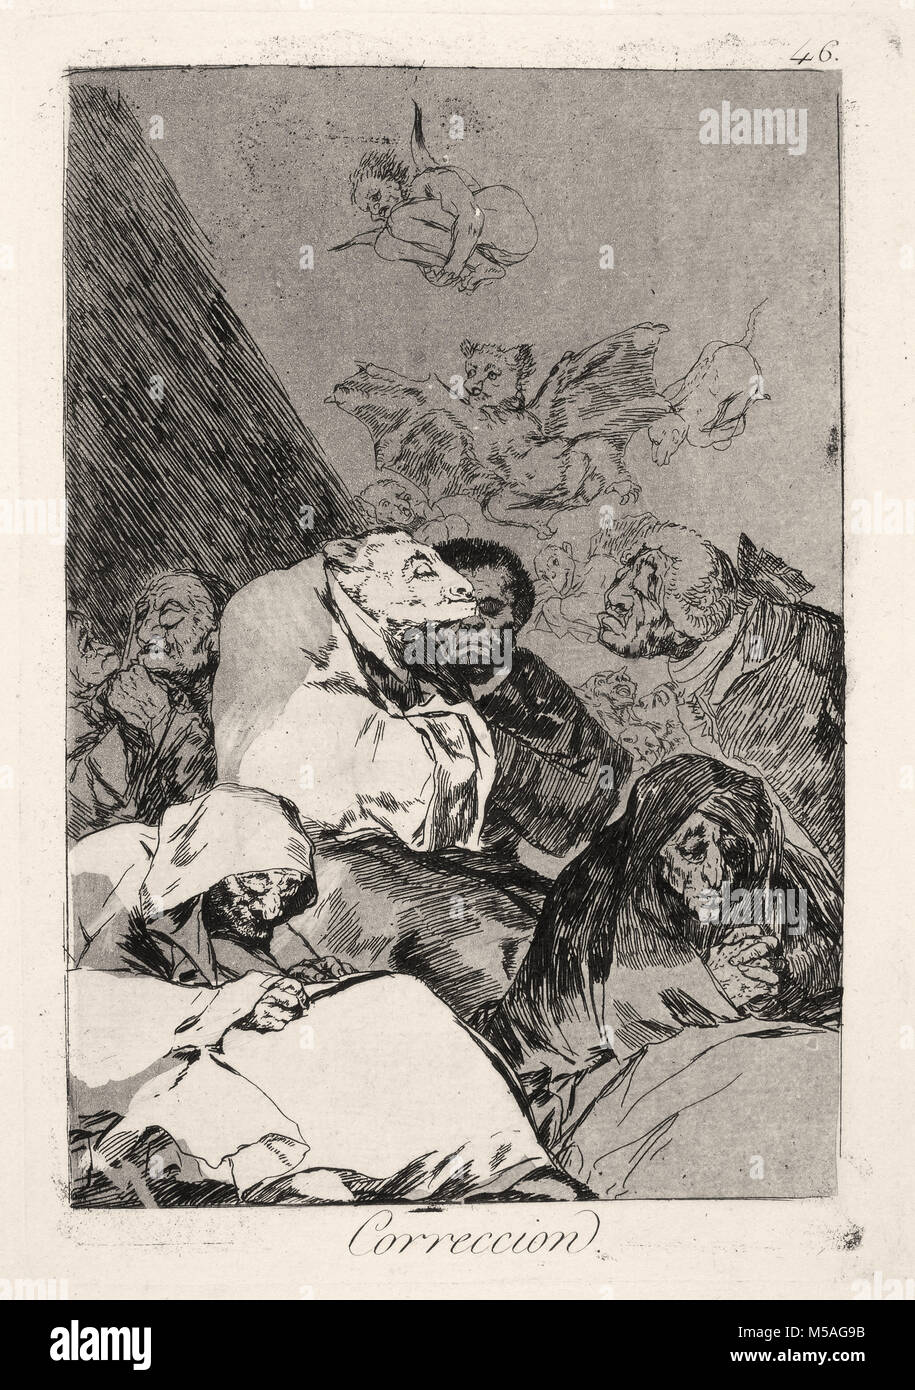 Francisco de Goya - Los Caprichos - No. 46 - Correccion Stock Photo